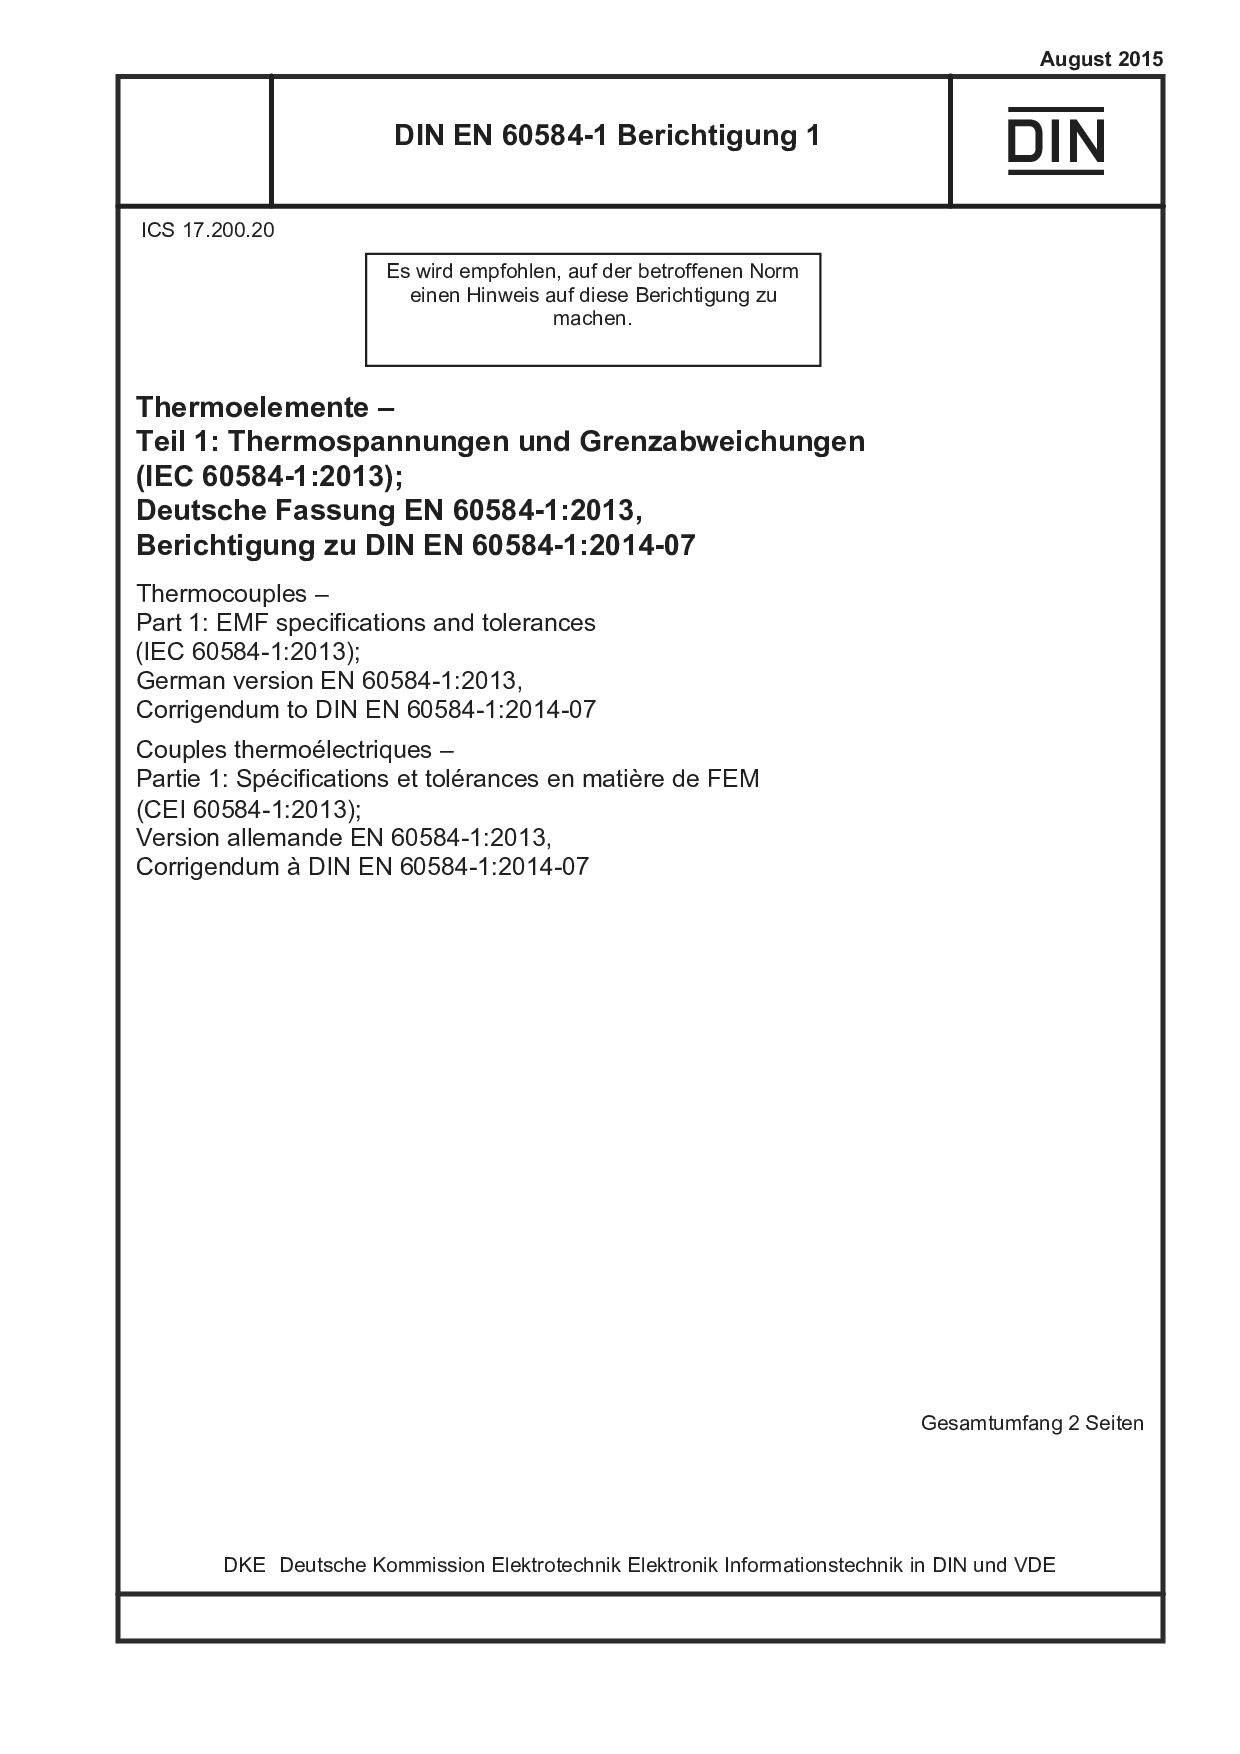 DIN EN 60584-1 Berichtigung 1:2015-08封面图